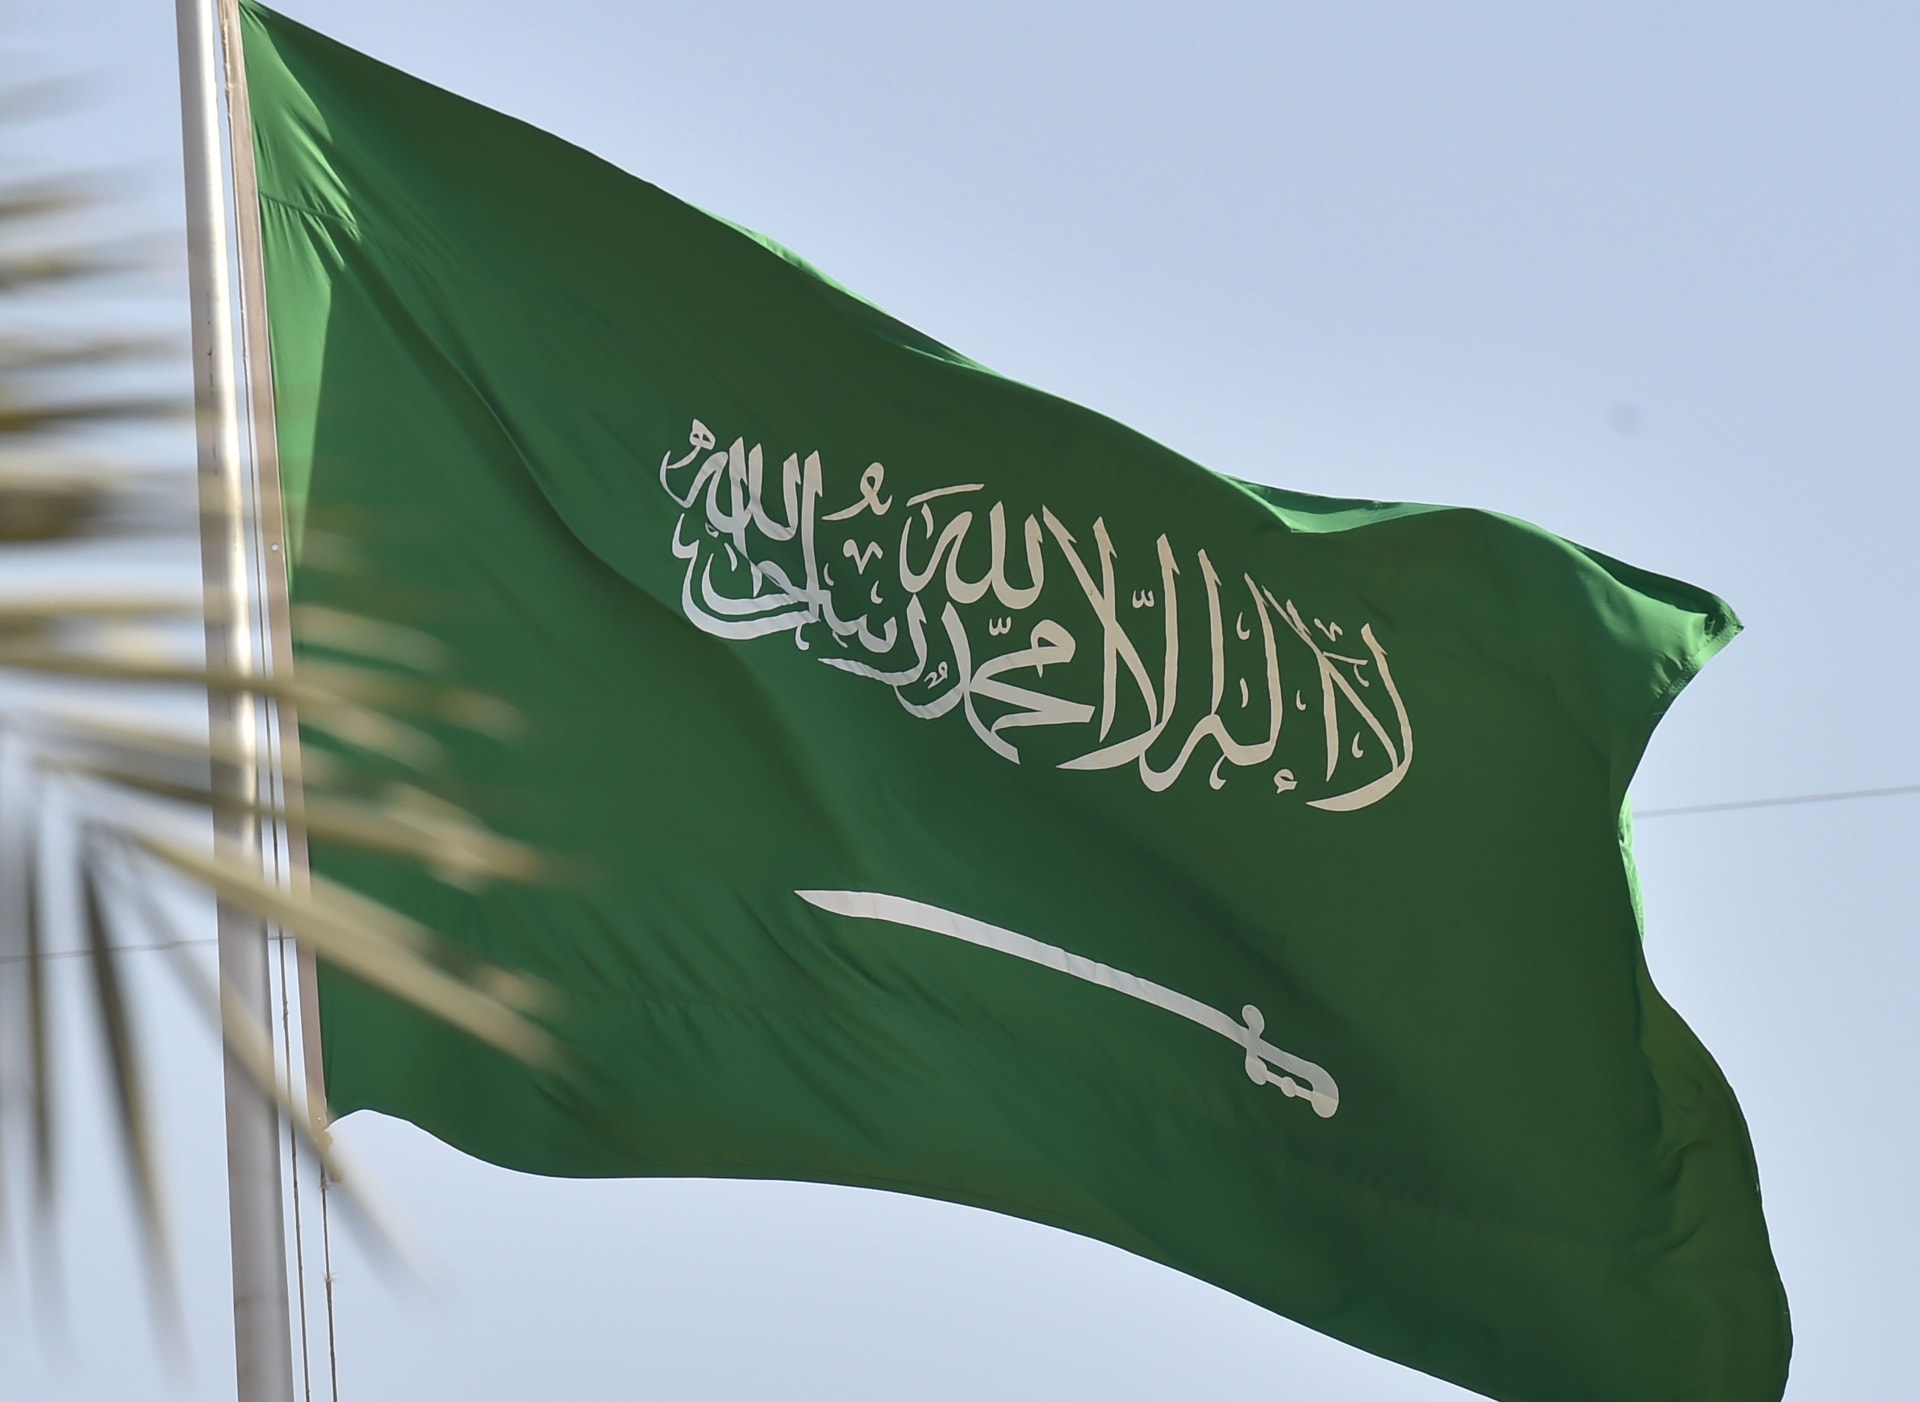 السعودية: تنفيذ حكم الإعدام "قصاصًا" على مقيم في جريمة قتل.. وكشف هويته